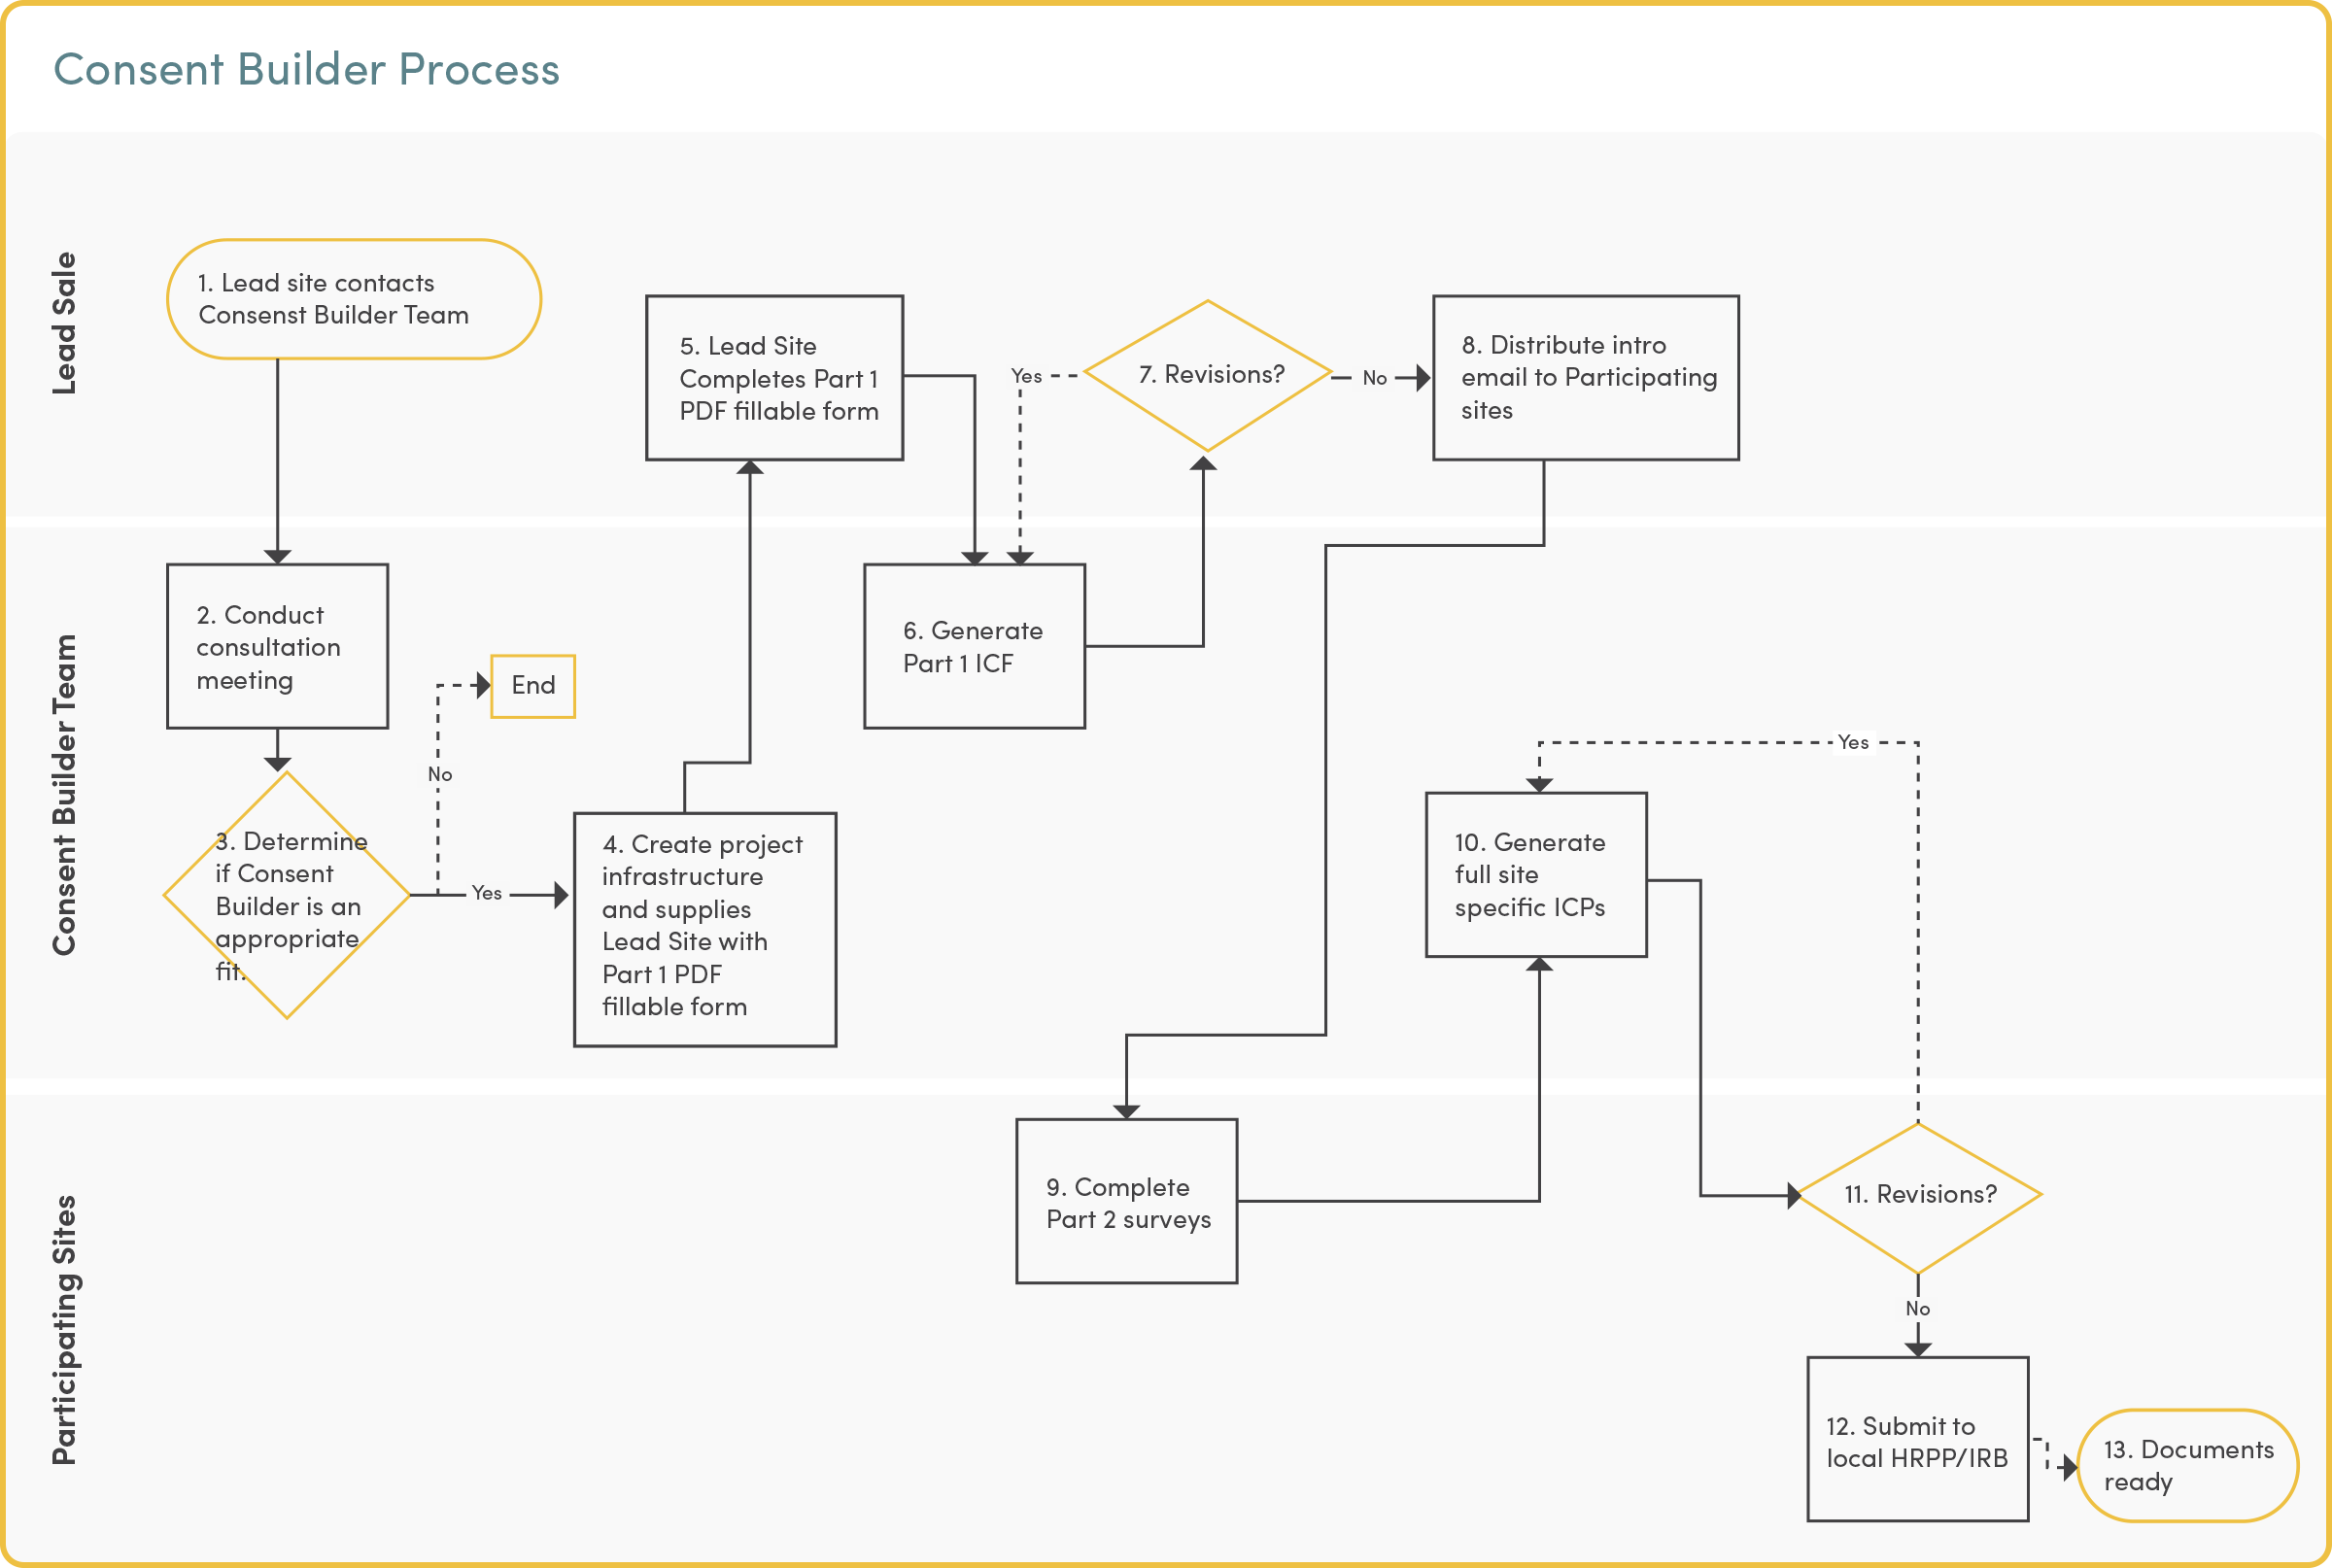 process map